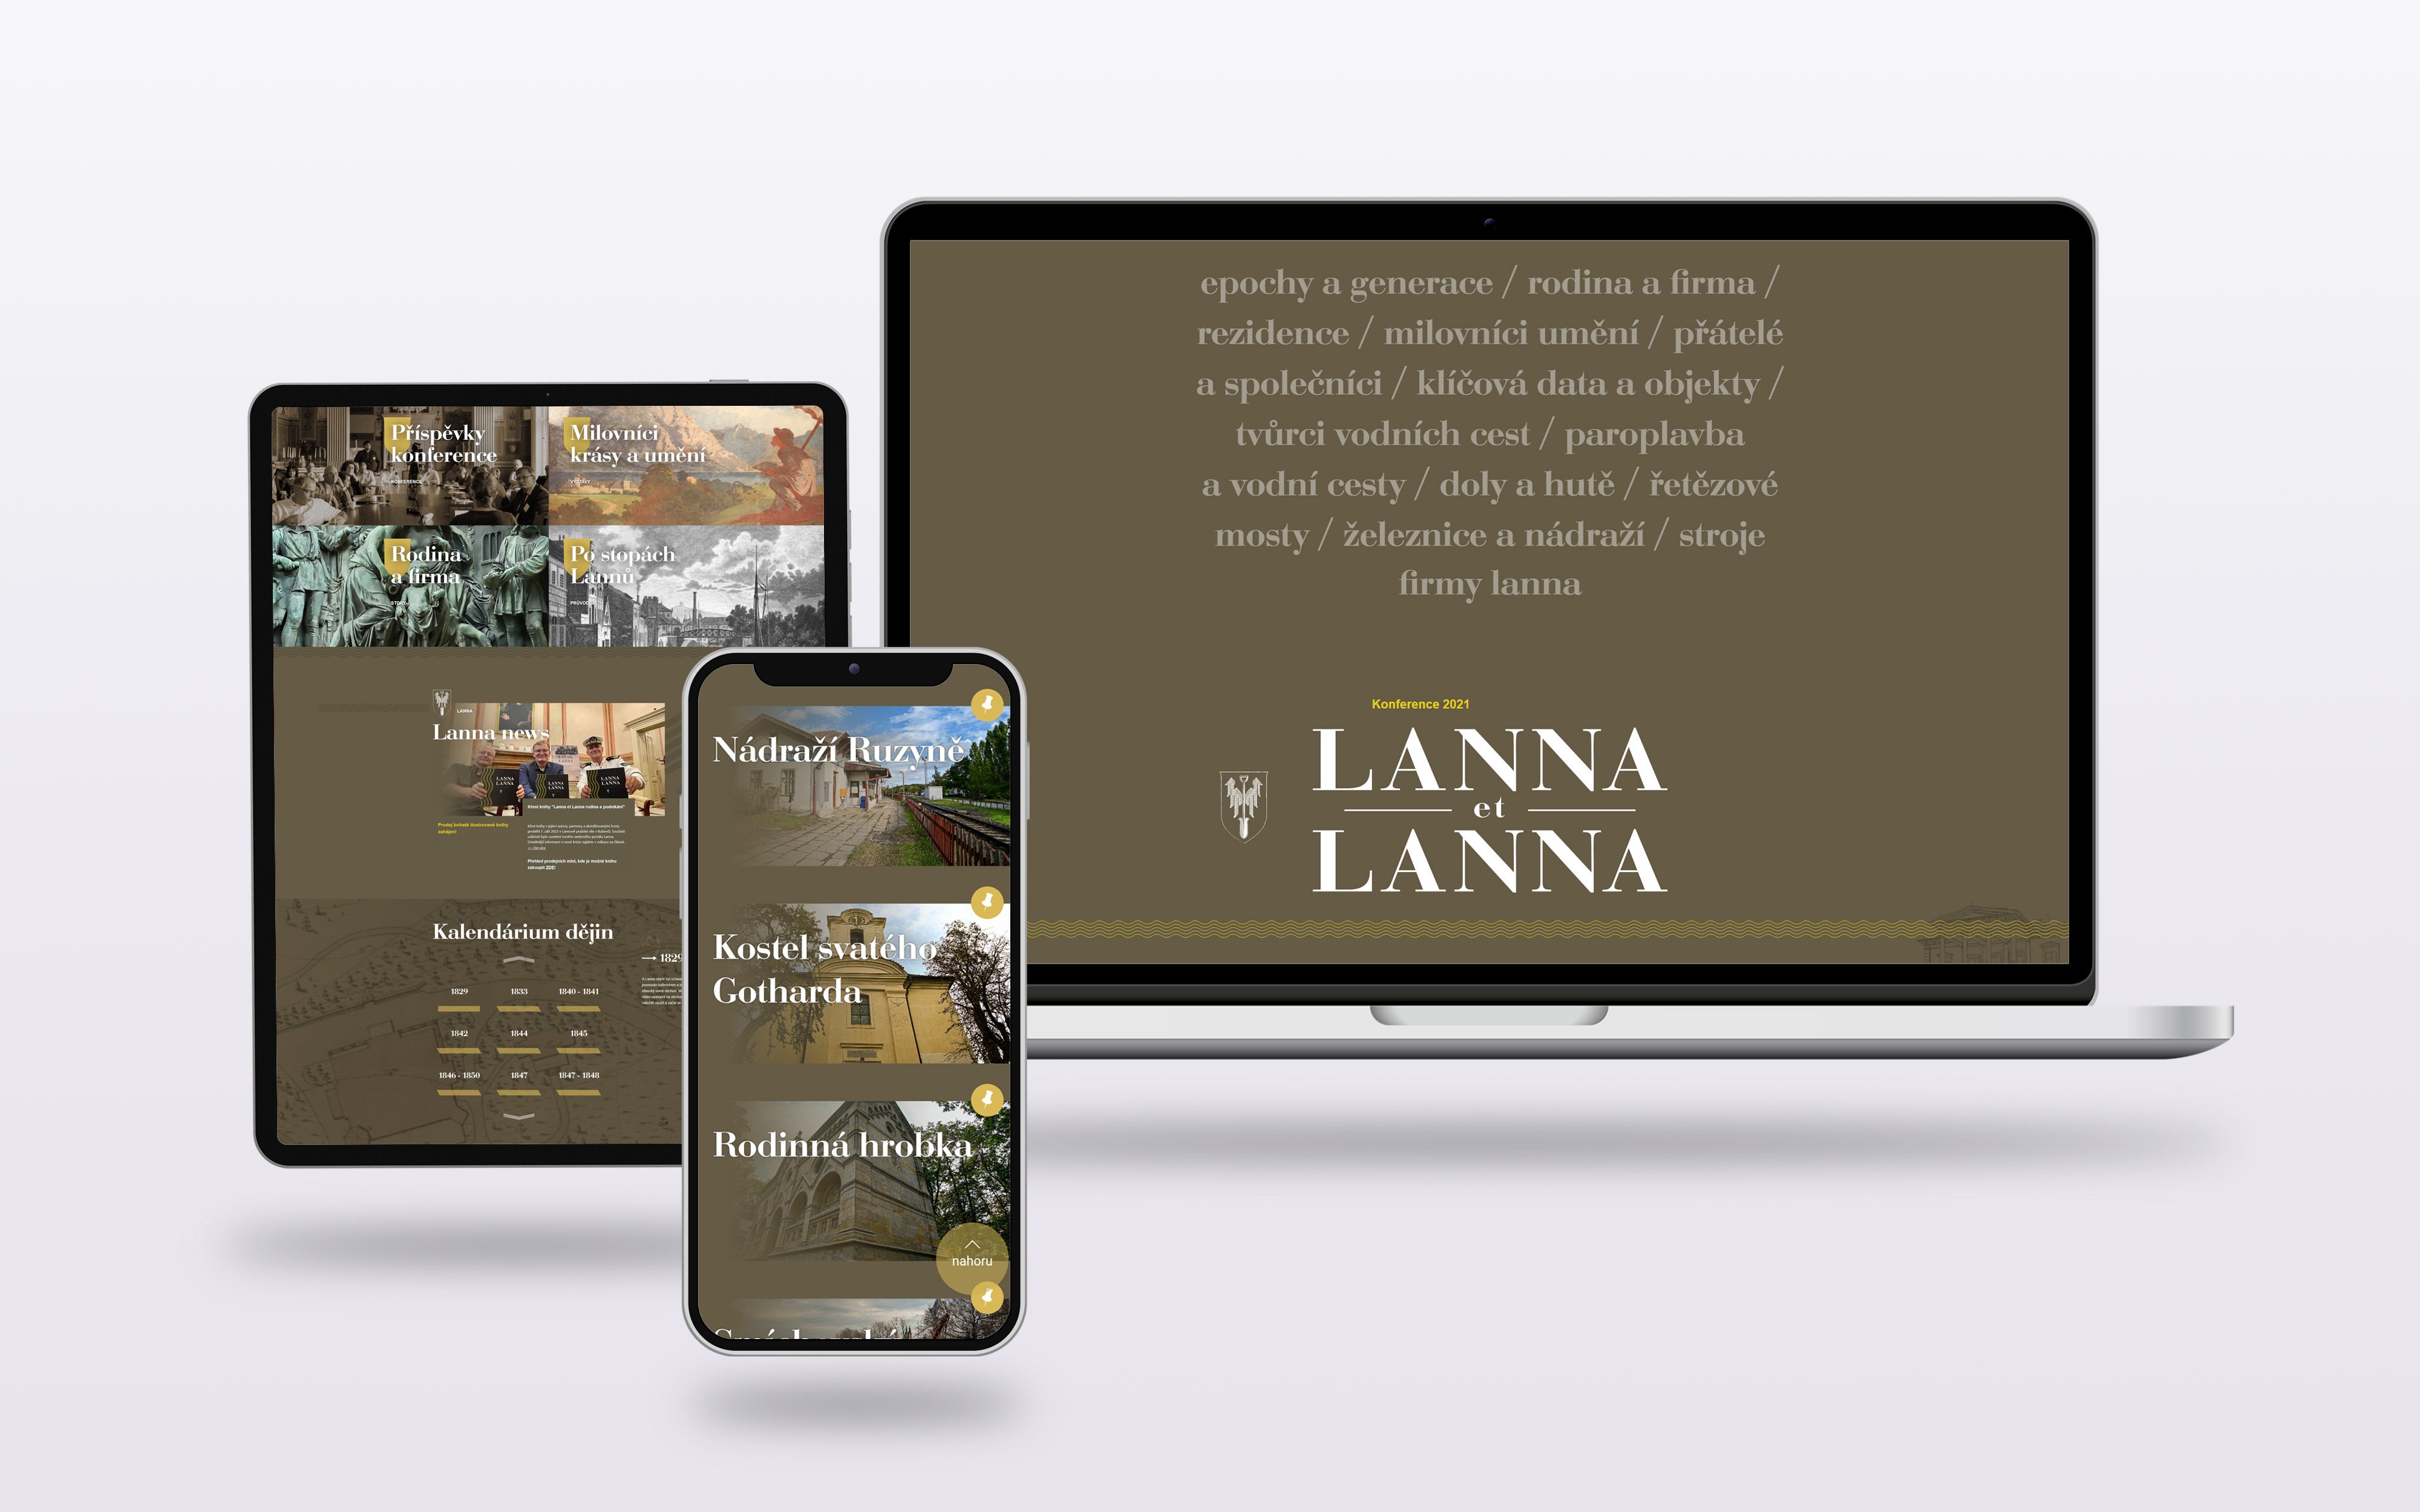 Lanna – European Cultural Routes